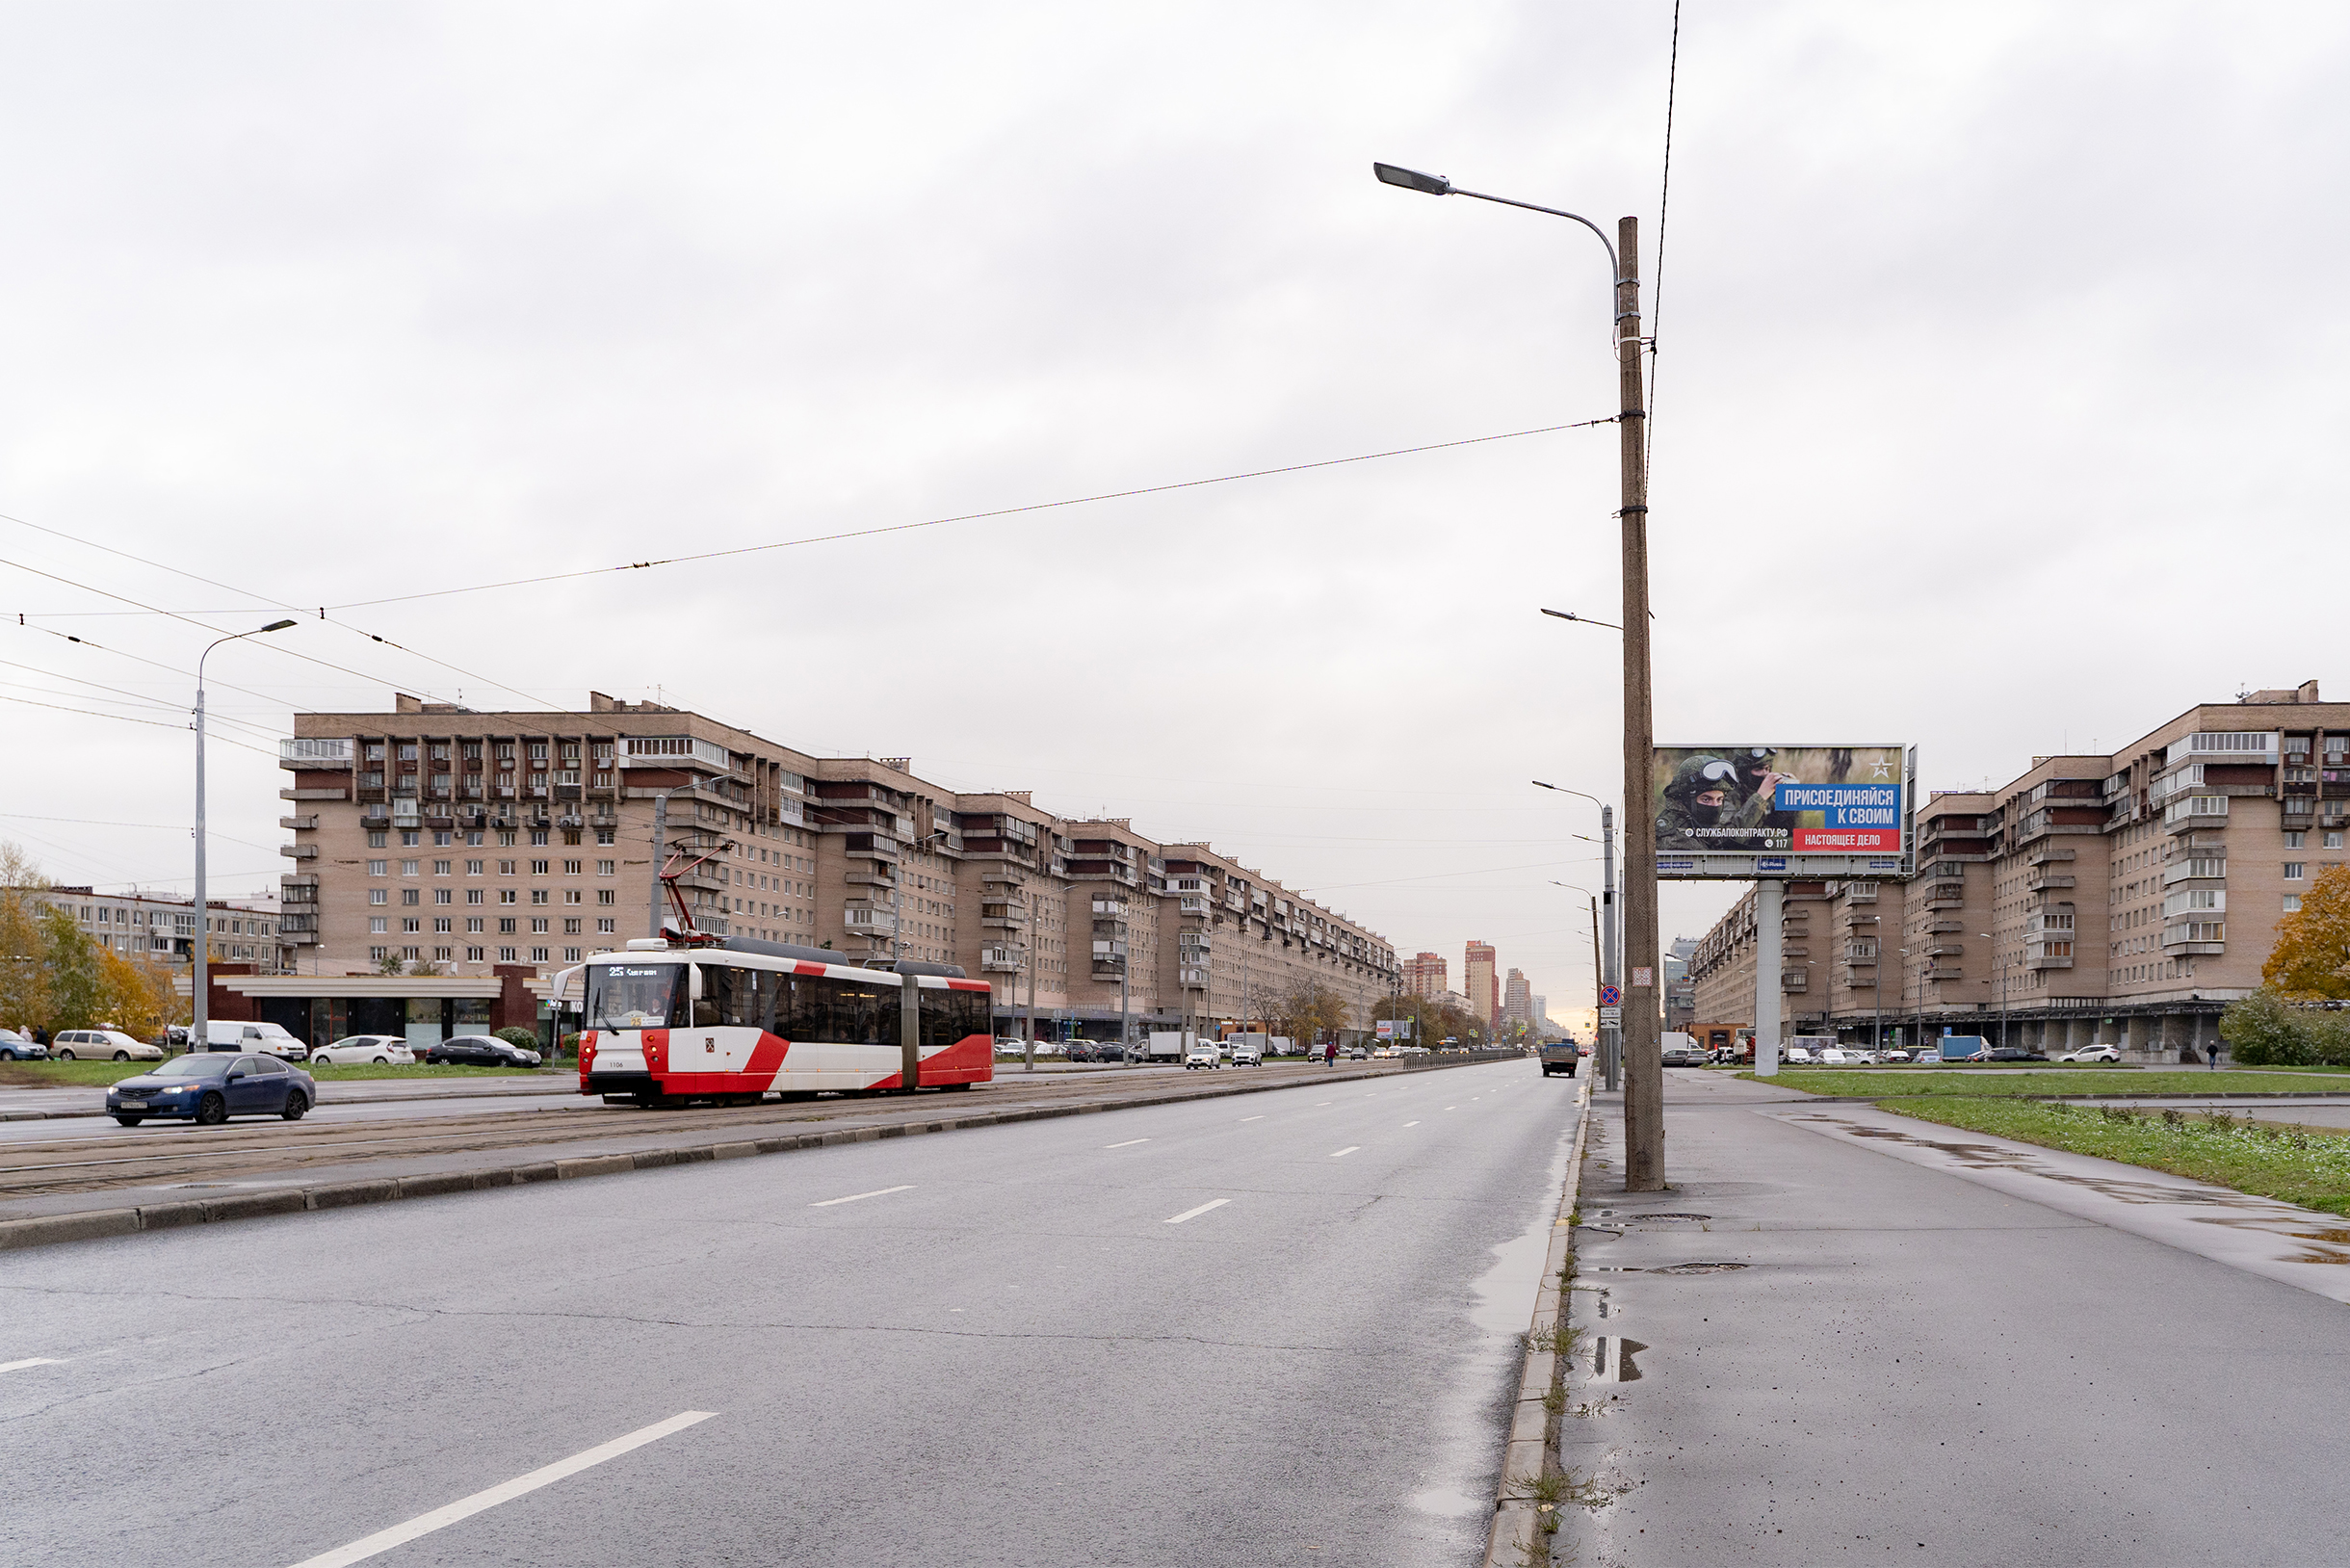 Трамвайная линия проходит через Бухарестскую улицу, дублирует линию метрополитена